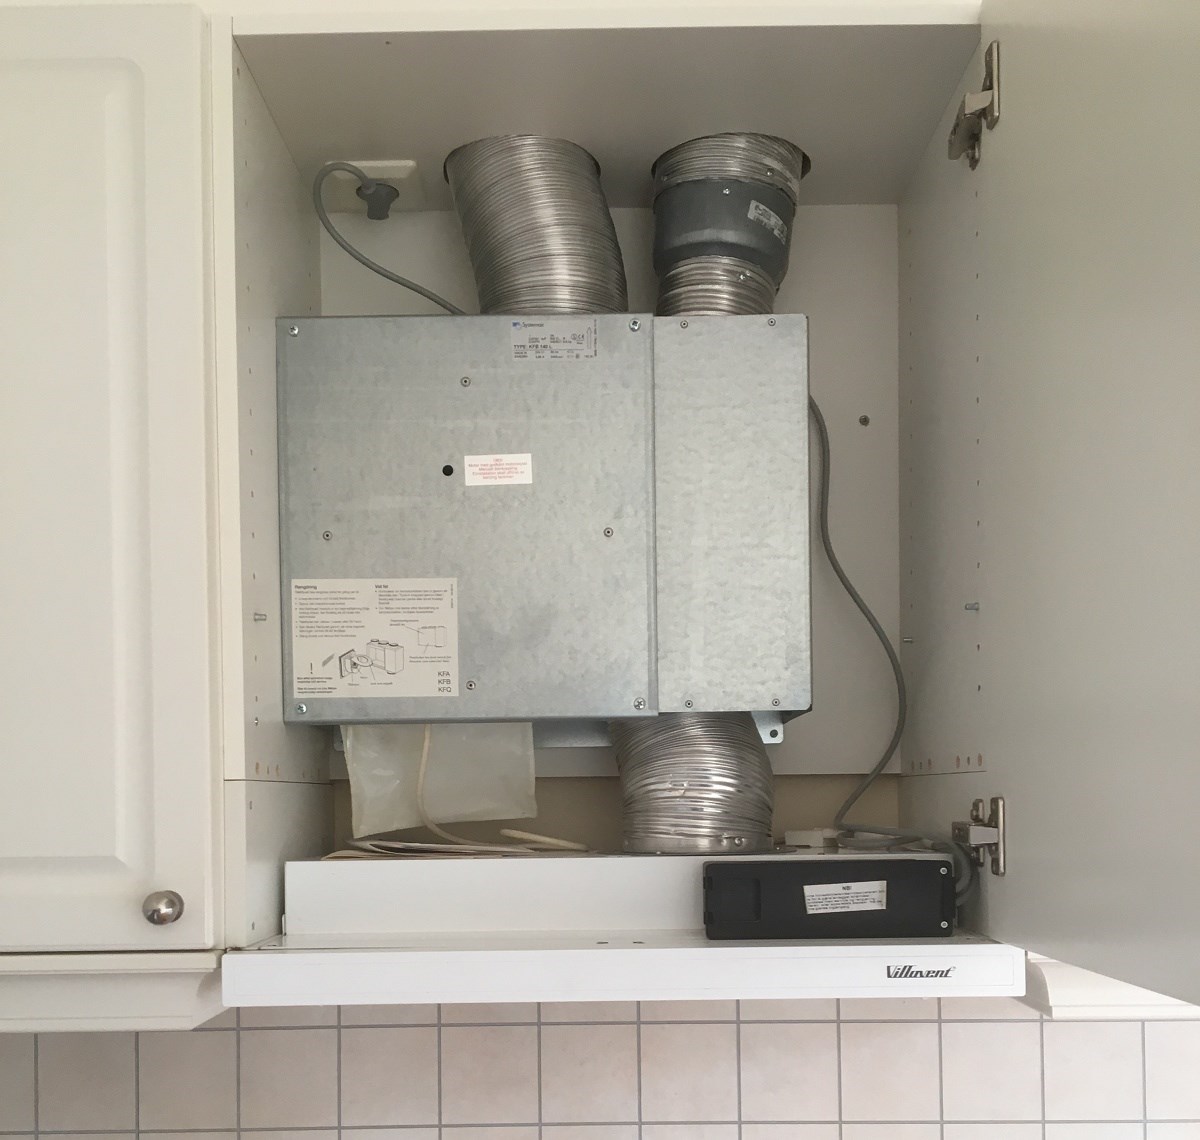 Støy fra kjøkkenvifte - Mekanisk ventilasjon - ventilator.jpg - MaCe